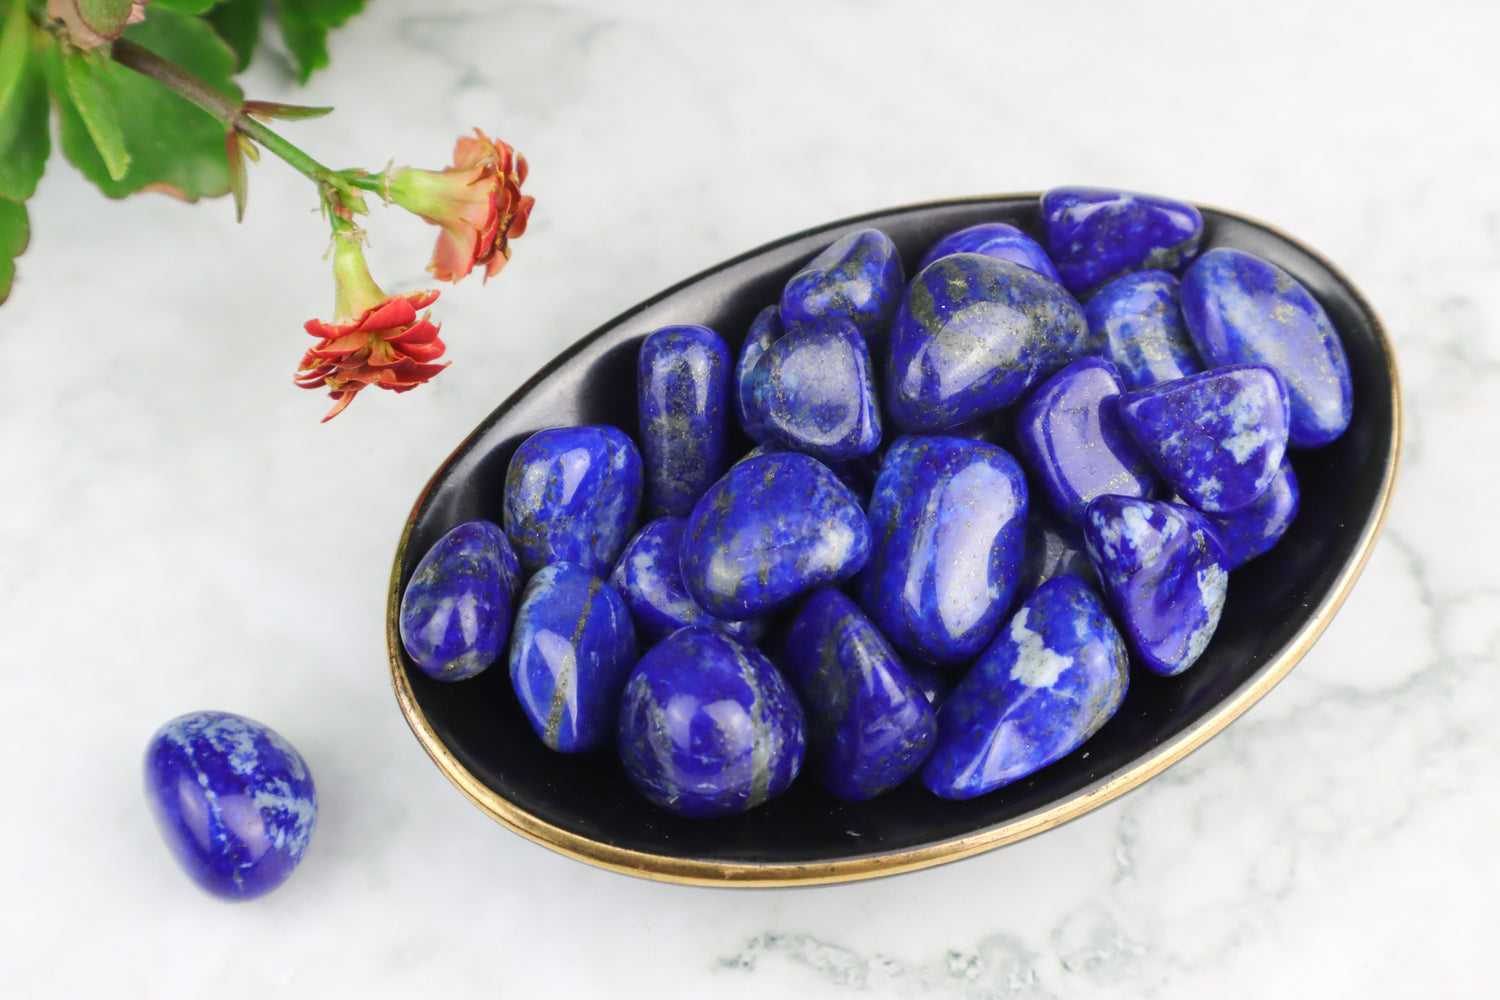 Lapis Lazuli Tumblestones